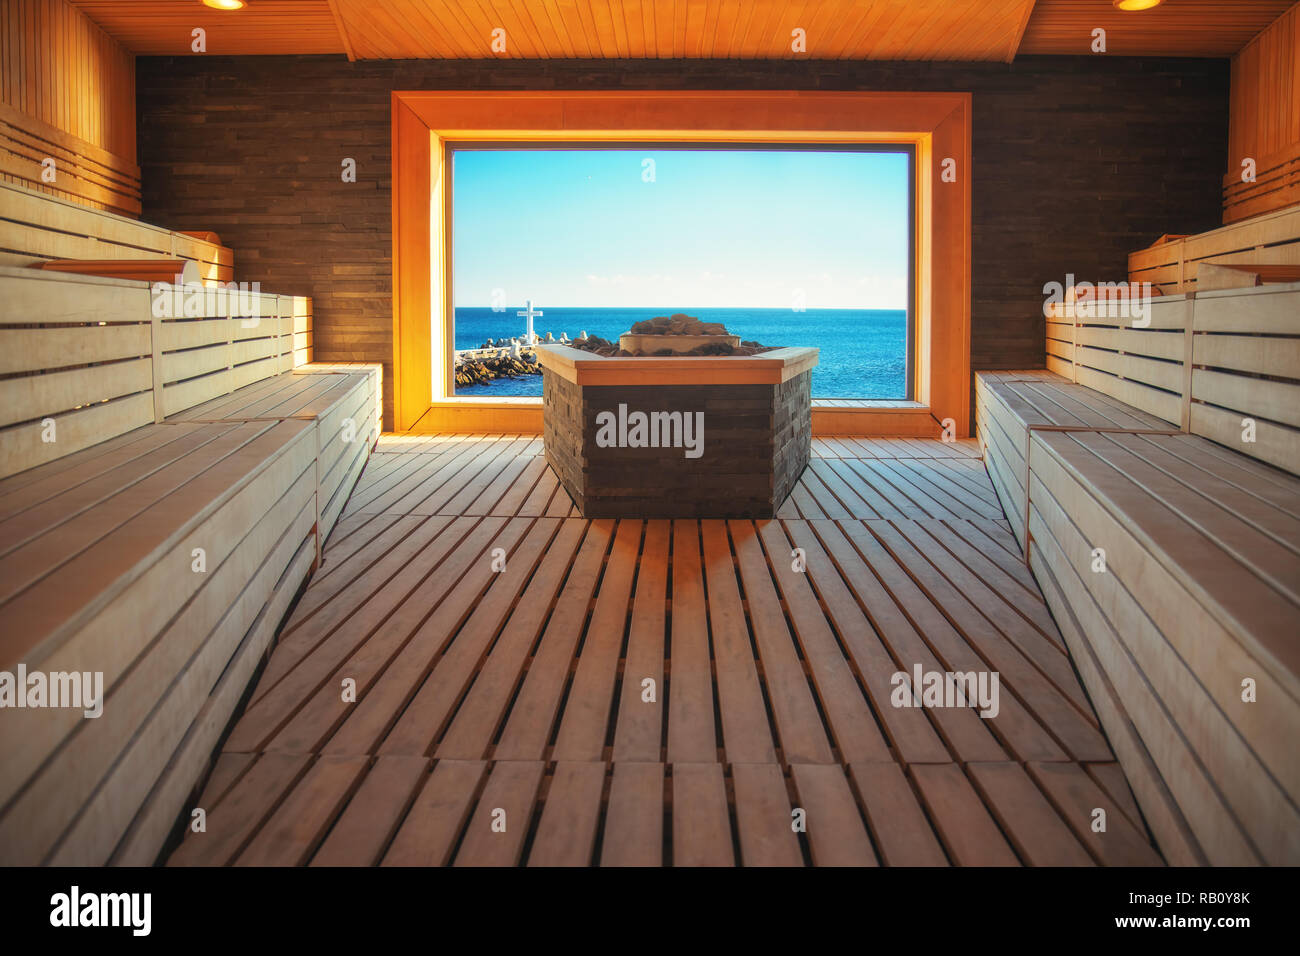 Holz Sauna und Blick in Richtung Meer, Dampfsauna im luxuriösen Wellnesscenter. Stockfoto